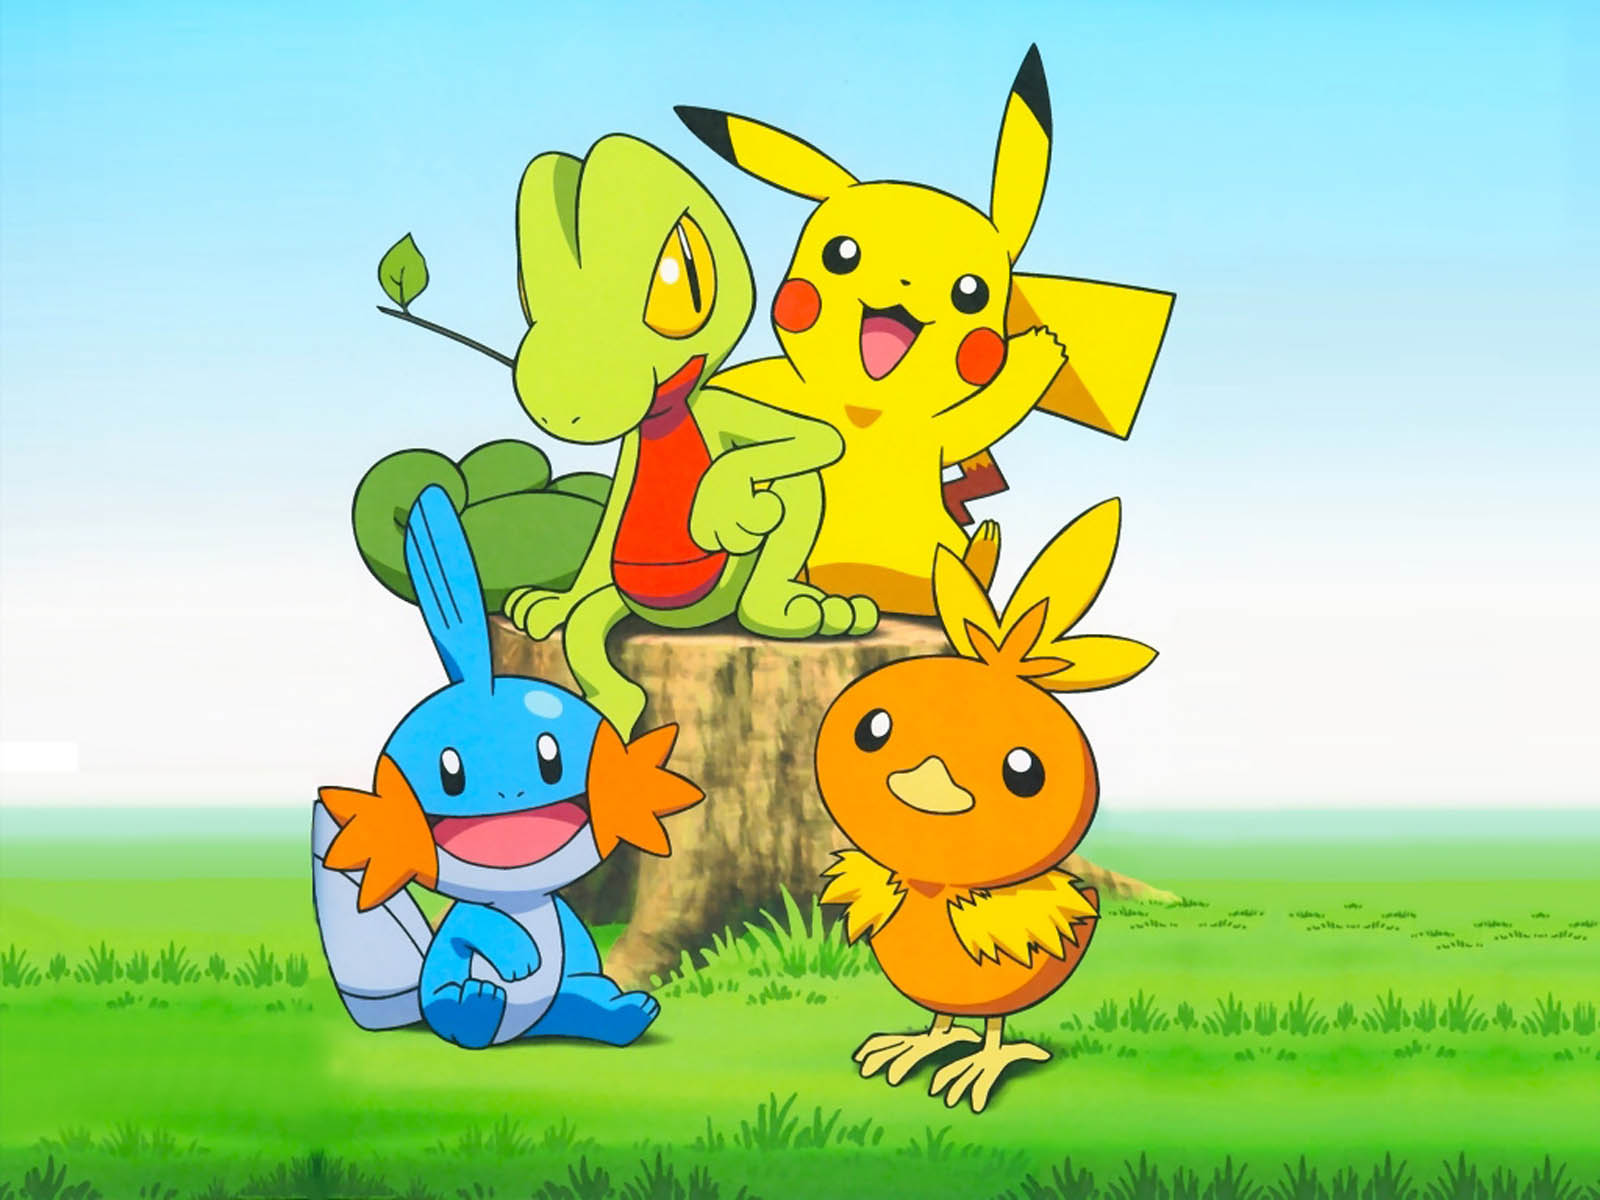 Hình Nền Pokémon Cartoon: Vẽ đẹp, màu sắc tươi sáng và khả năng kể chuyện hấp dẫn là những điểm nổi bật của loạt phim hoạt hình Pokémon. Hình nền Pokémon Cartoon sẽ đưa bạn đến thế giới đầy màu sắc, để bạn thỏa sức tưởng tượng và khám phá thêm về những nhân vật yêu thích.